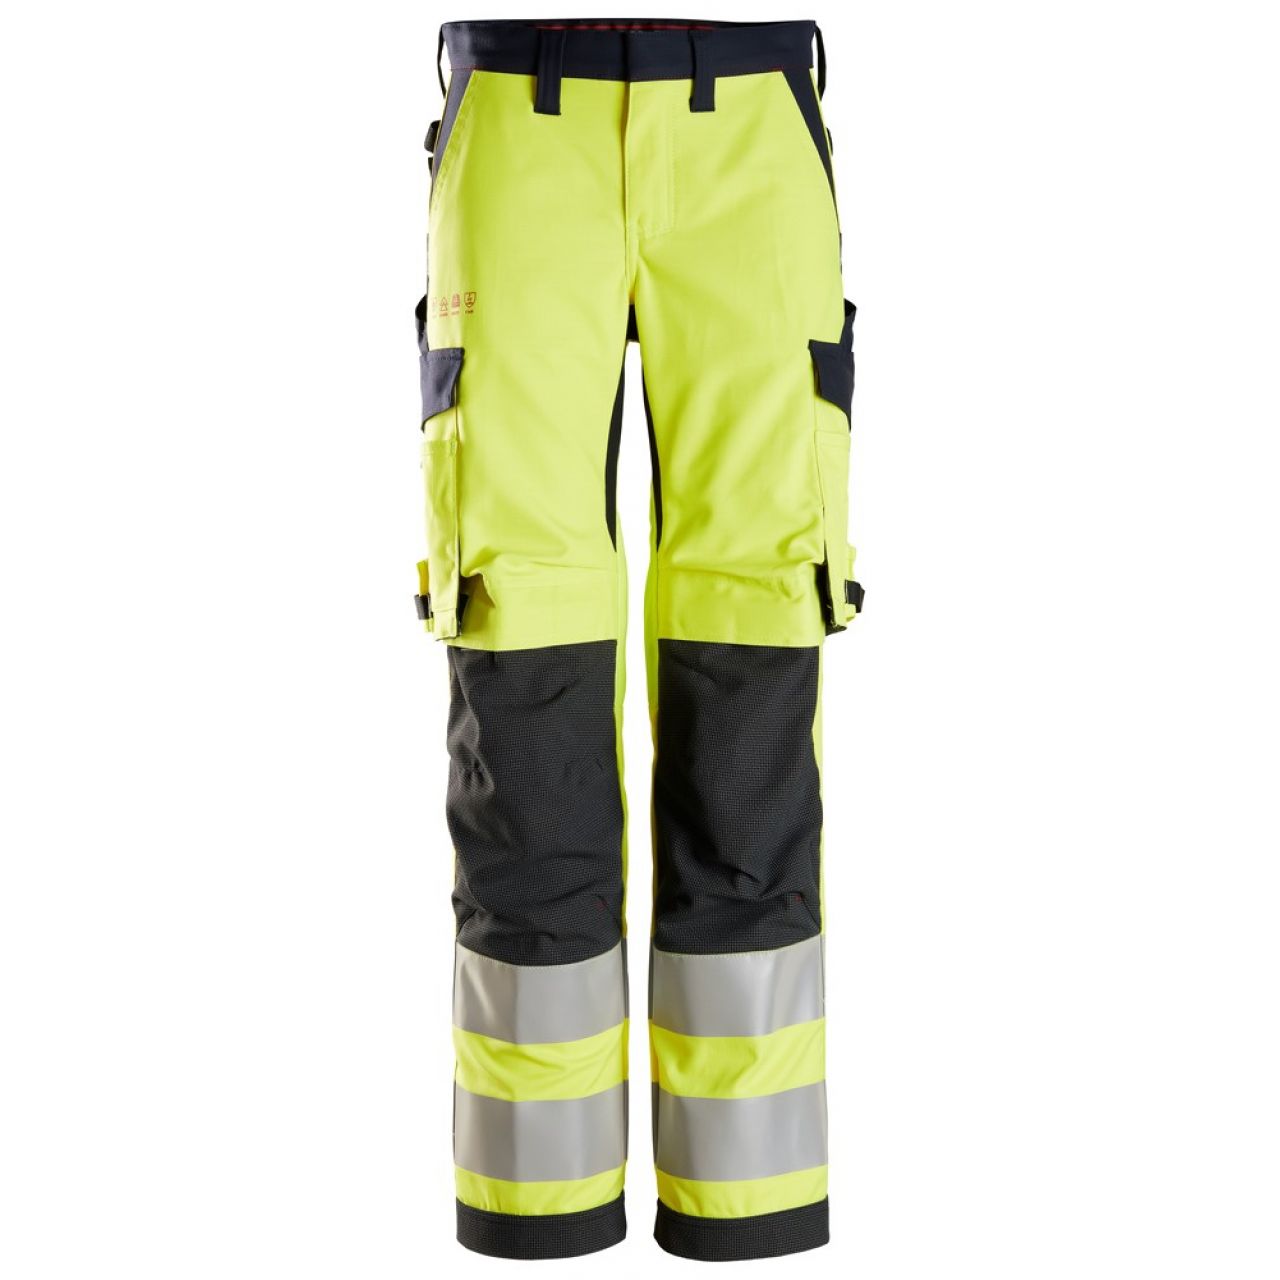 6760 Pantalones largos de trabajo de alta visibilidad clase 2 para mujer ProtecWork amarillo-azul marino talla 48